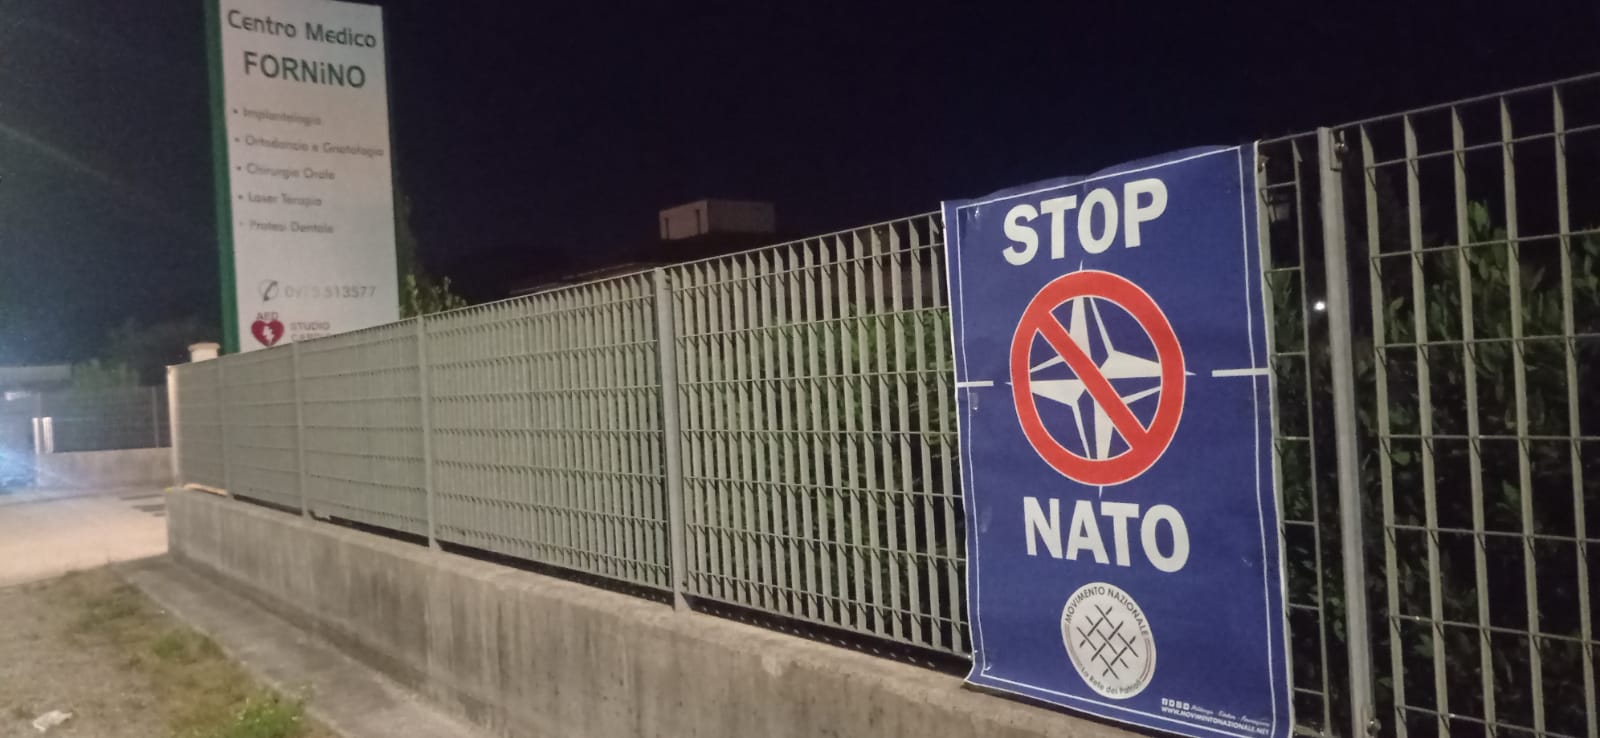 Vallo di Diano: stop NATO, Movimento Nazionale “No alla guerra” 